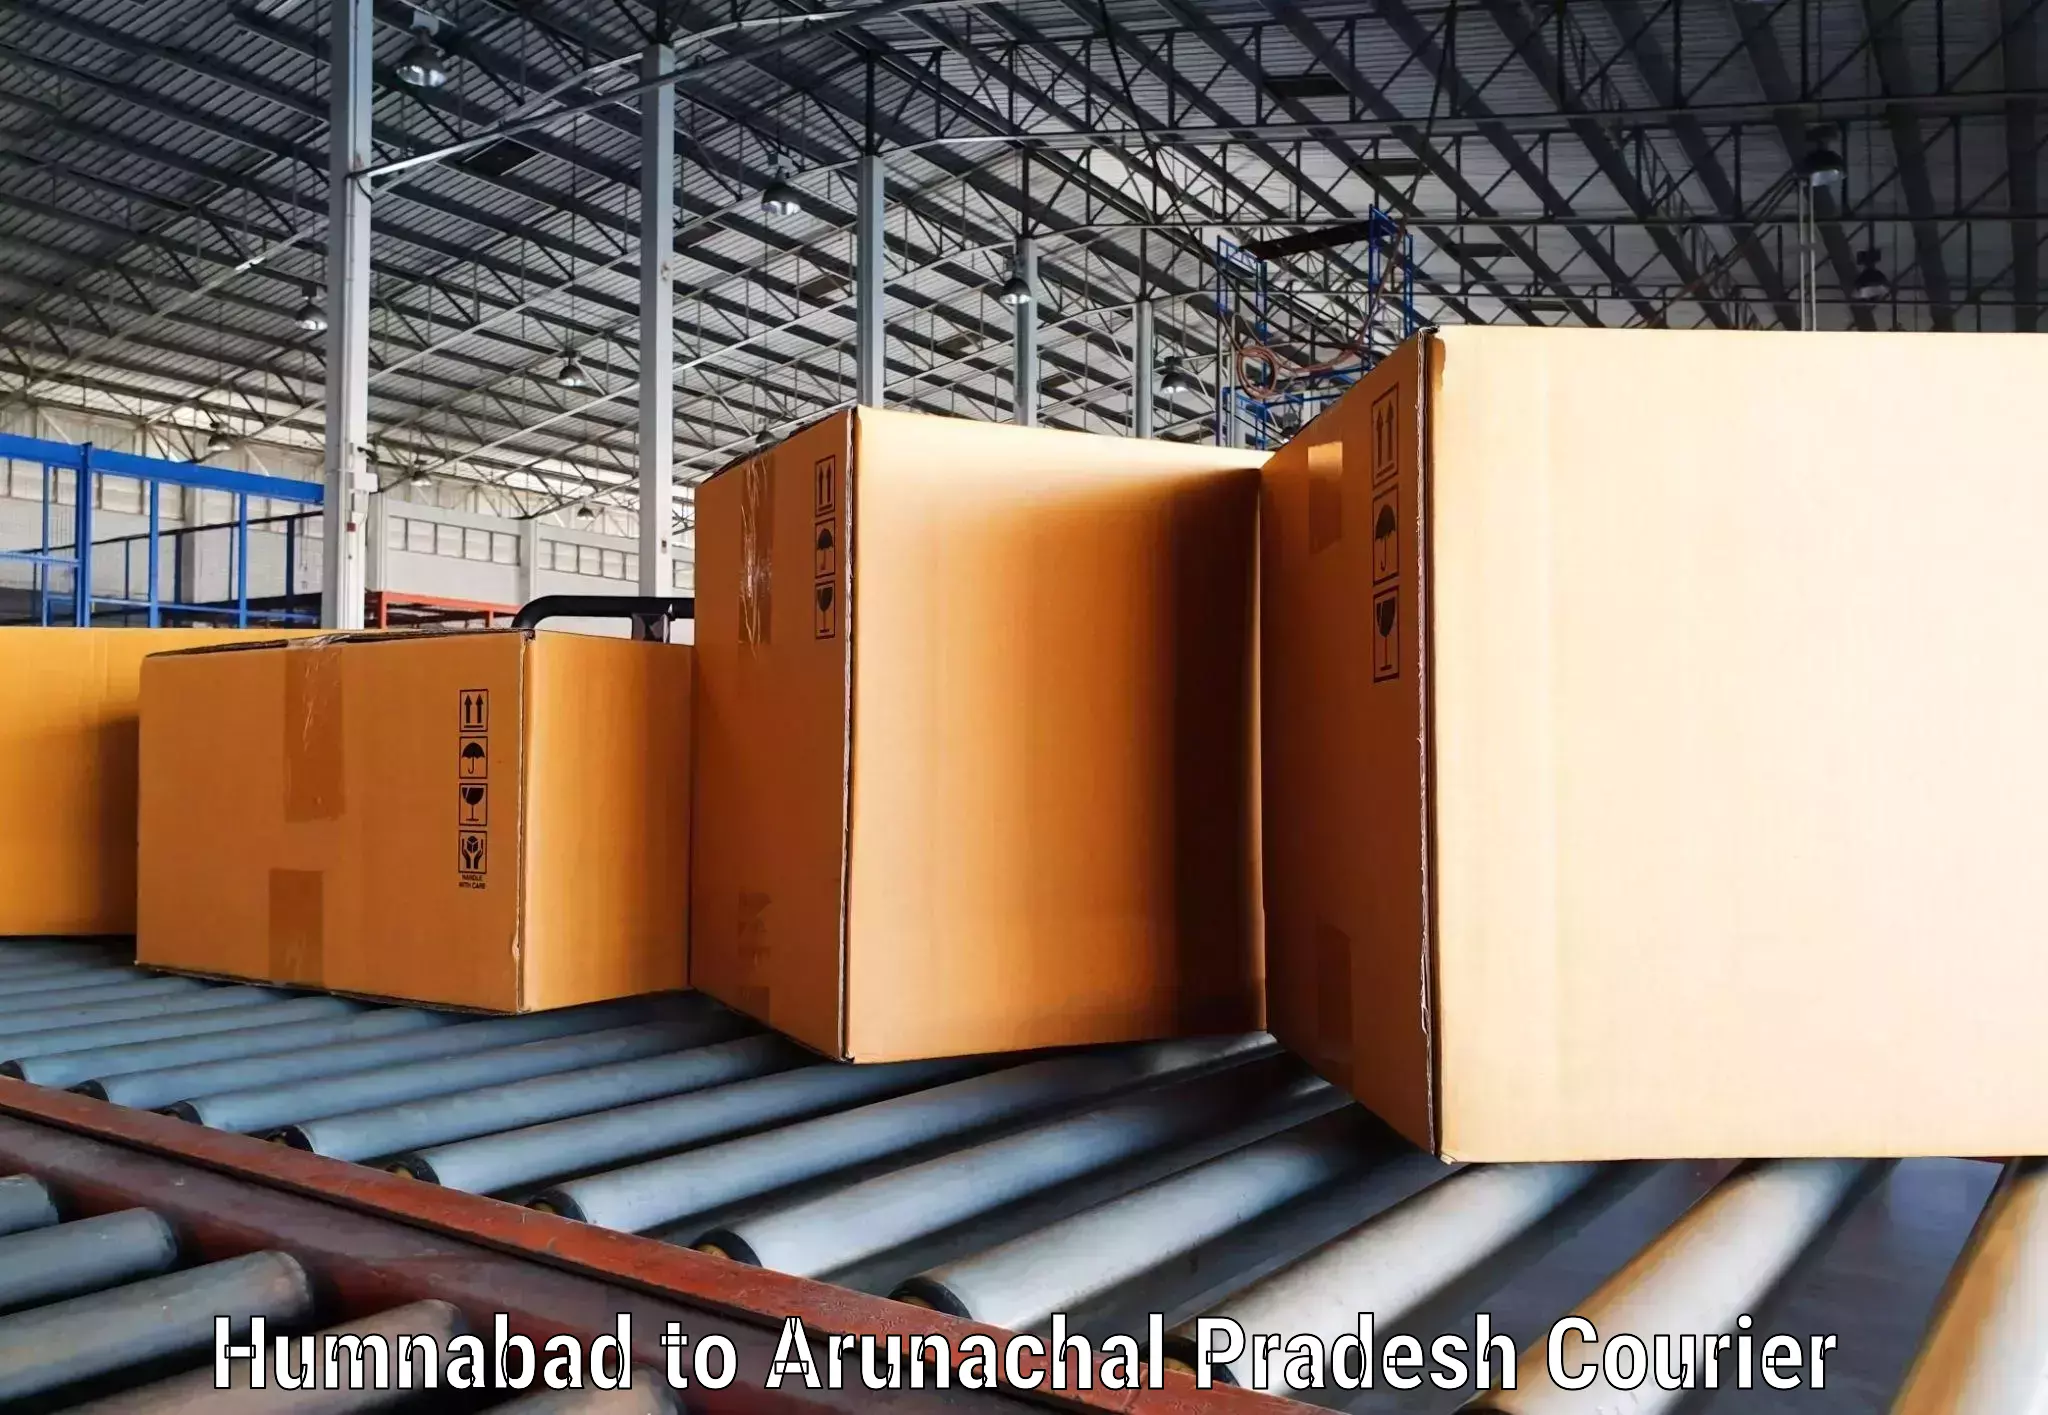 High-capacity shipping options Humnabad to Dibang Valley